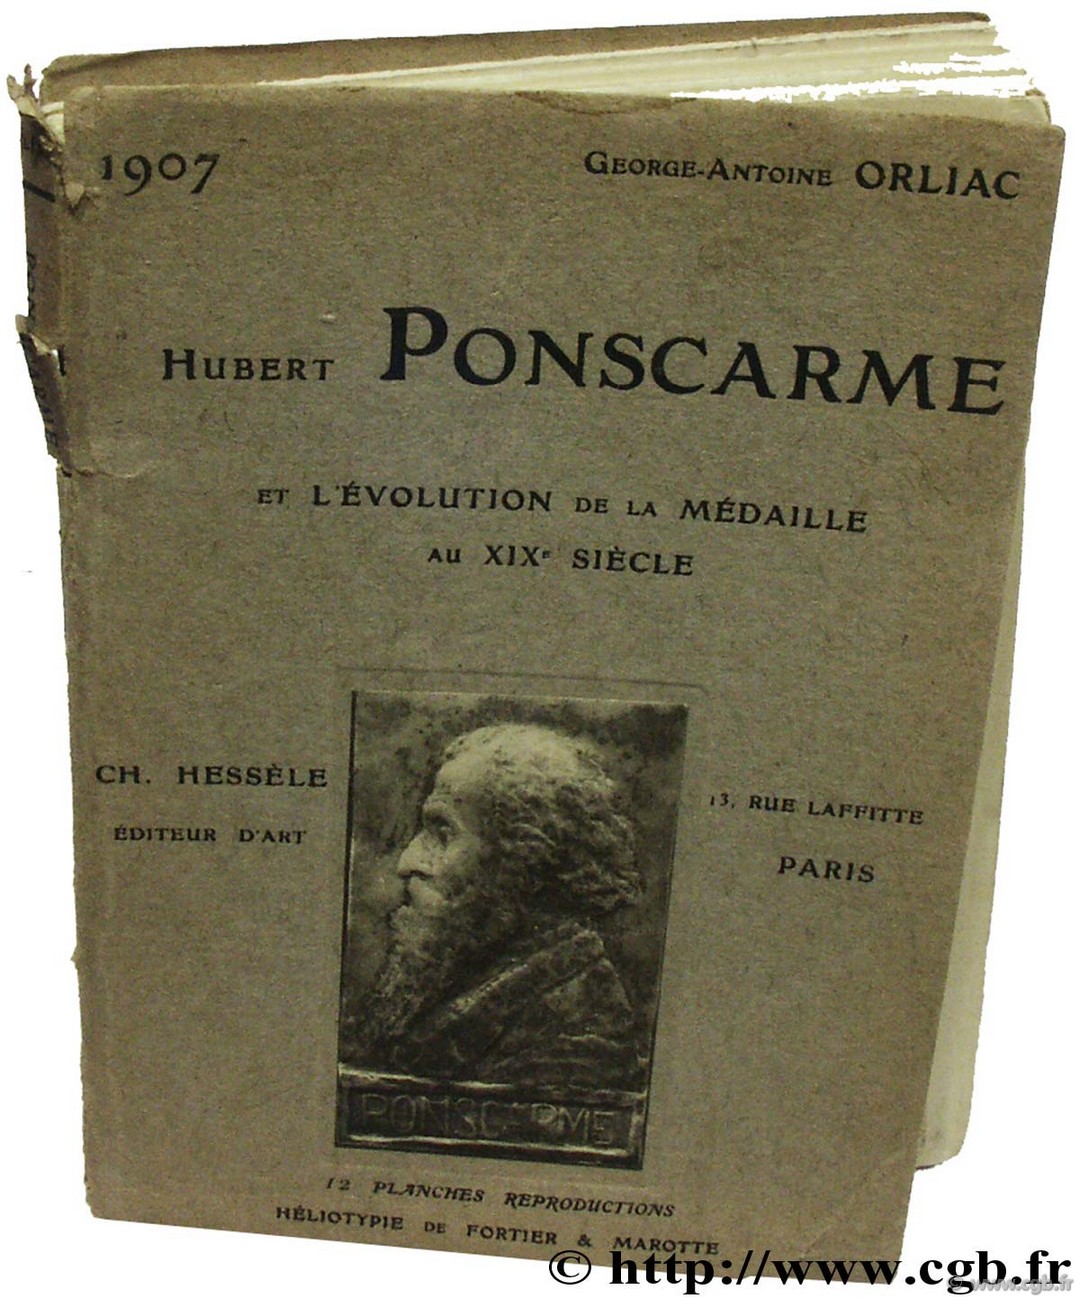 Hubert Ponscarme et l Evolution de la Médaille au XIXème siècle ORLIAC G.-A.